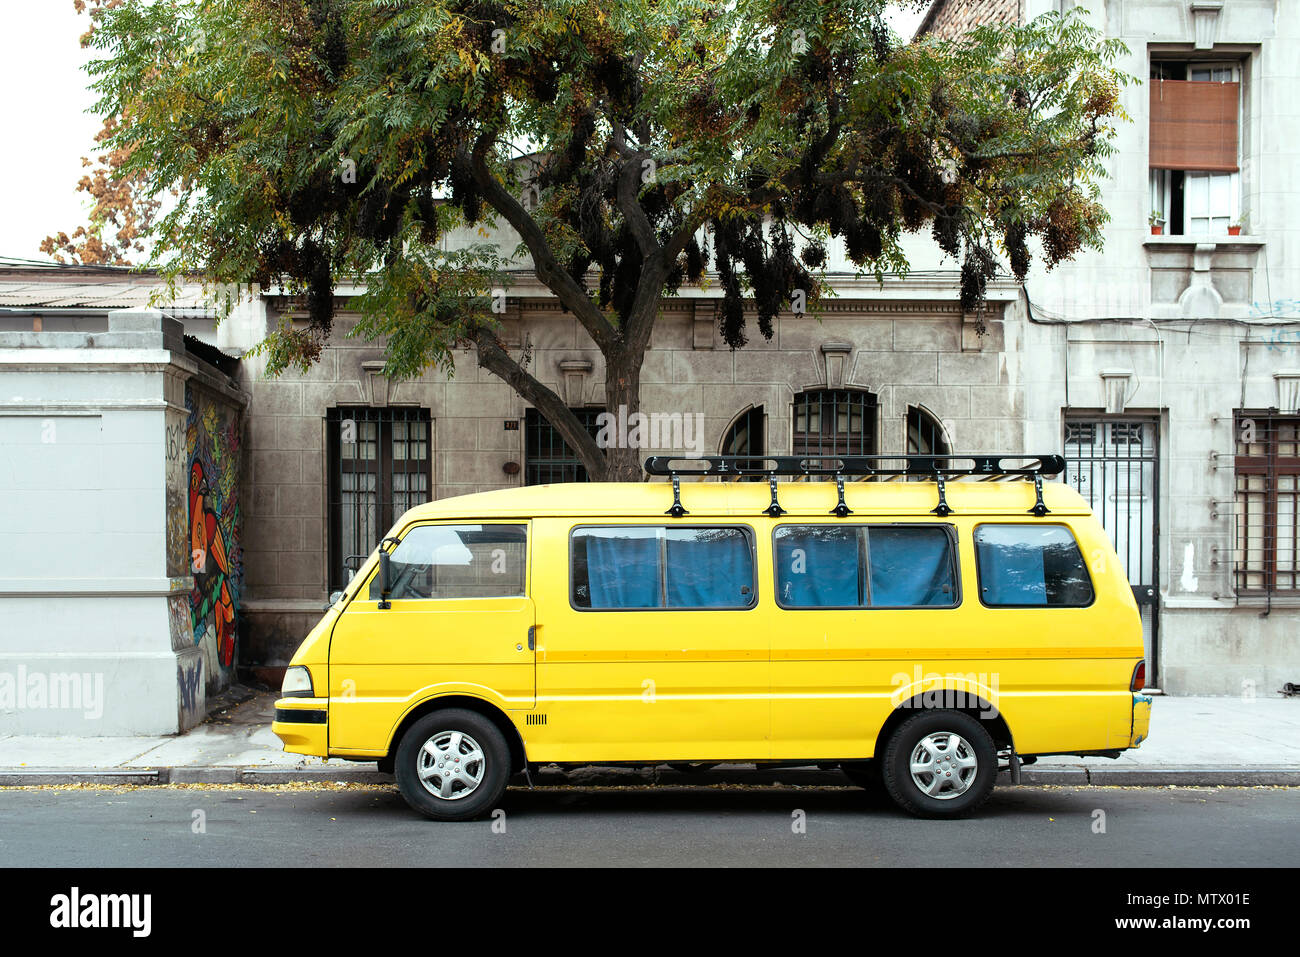 Vintage jaune caravan parking dans les rues de Santiago, Chili. Scène urbaine colorée. Mai 2018 Banque D'Images